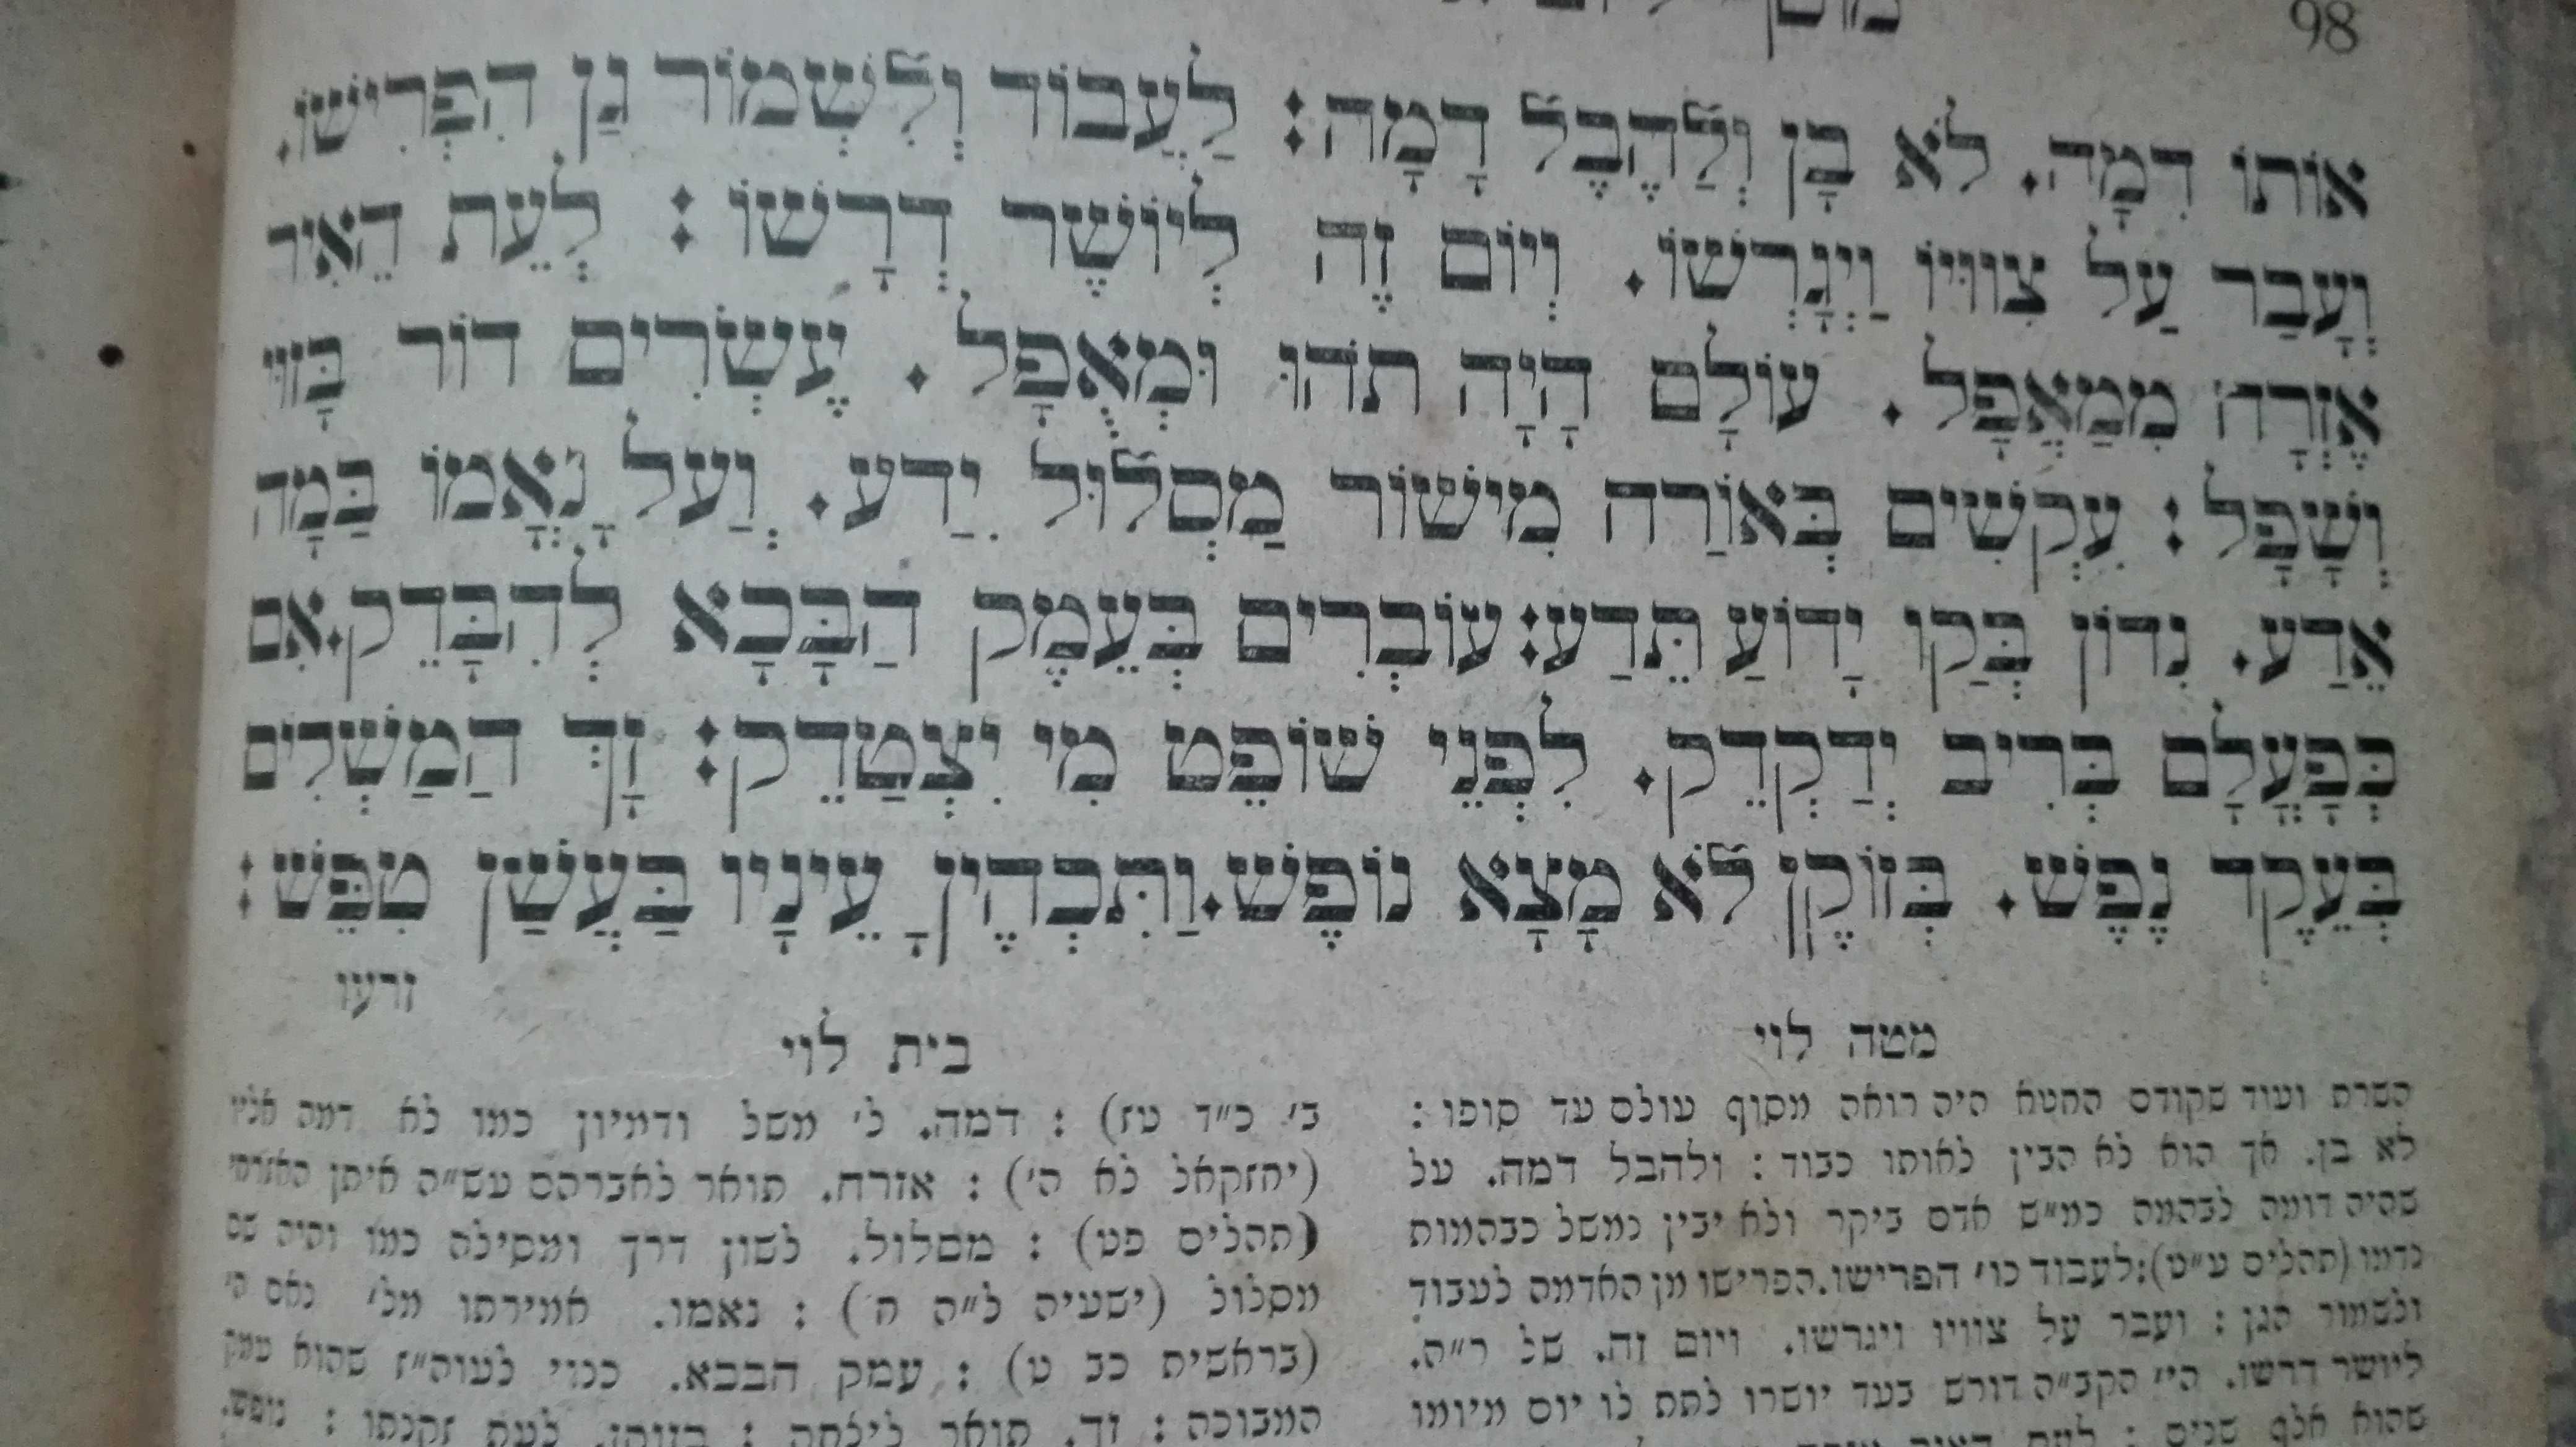 Еврейская религиозная книга Махзоръ Молитвы Львов Lemberg 1907г.